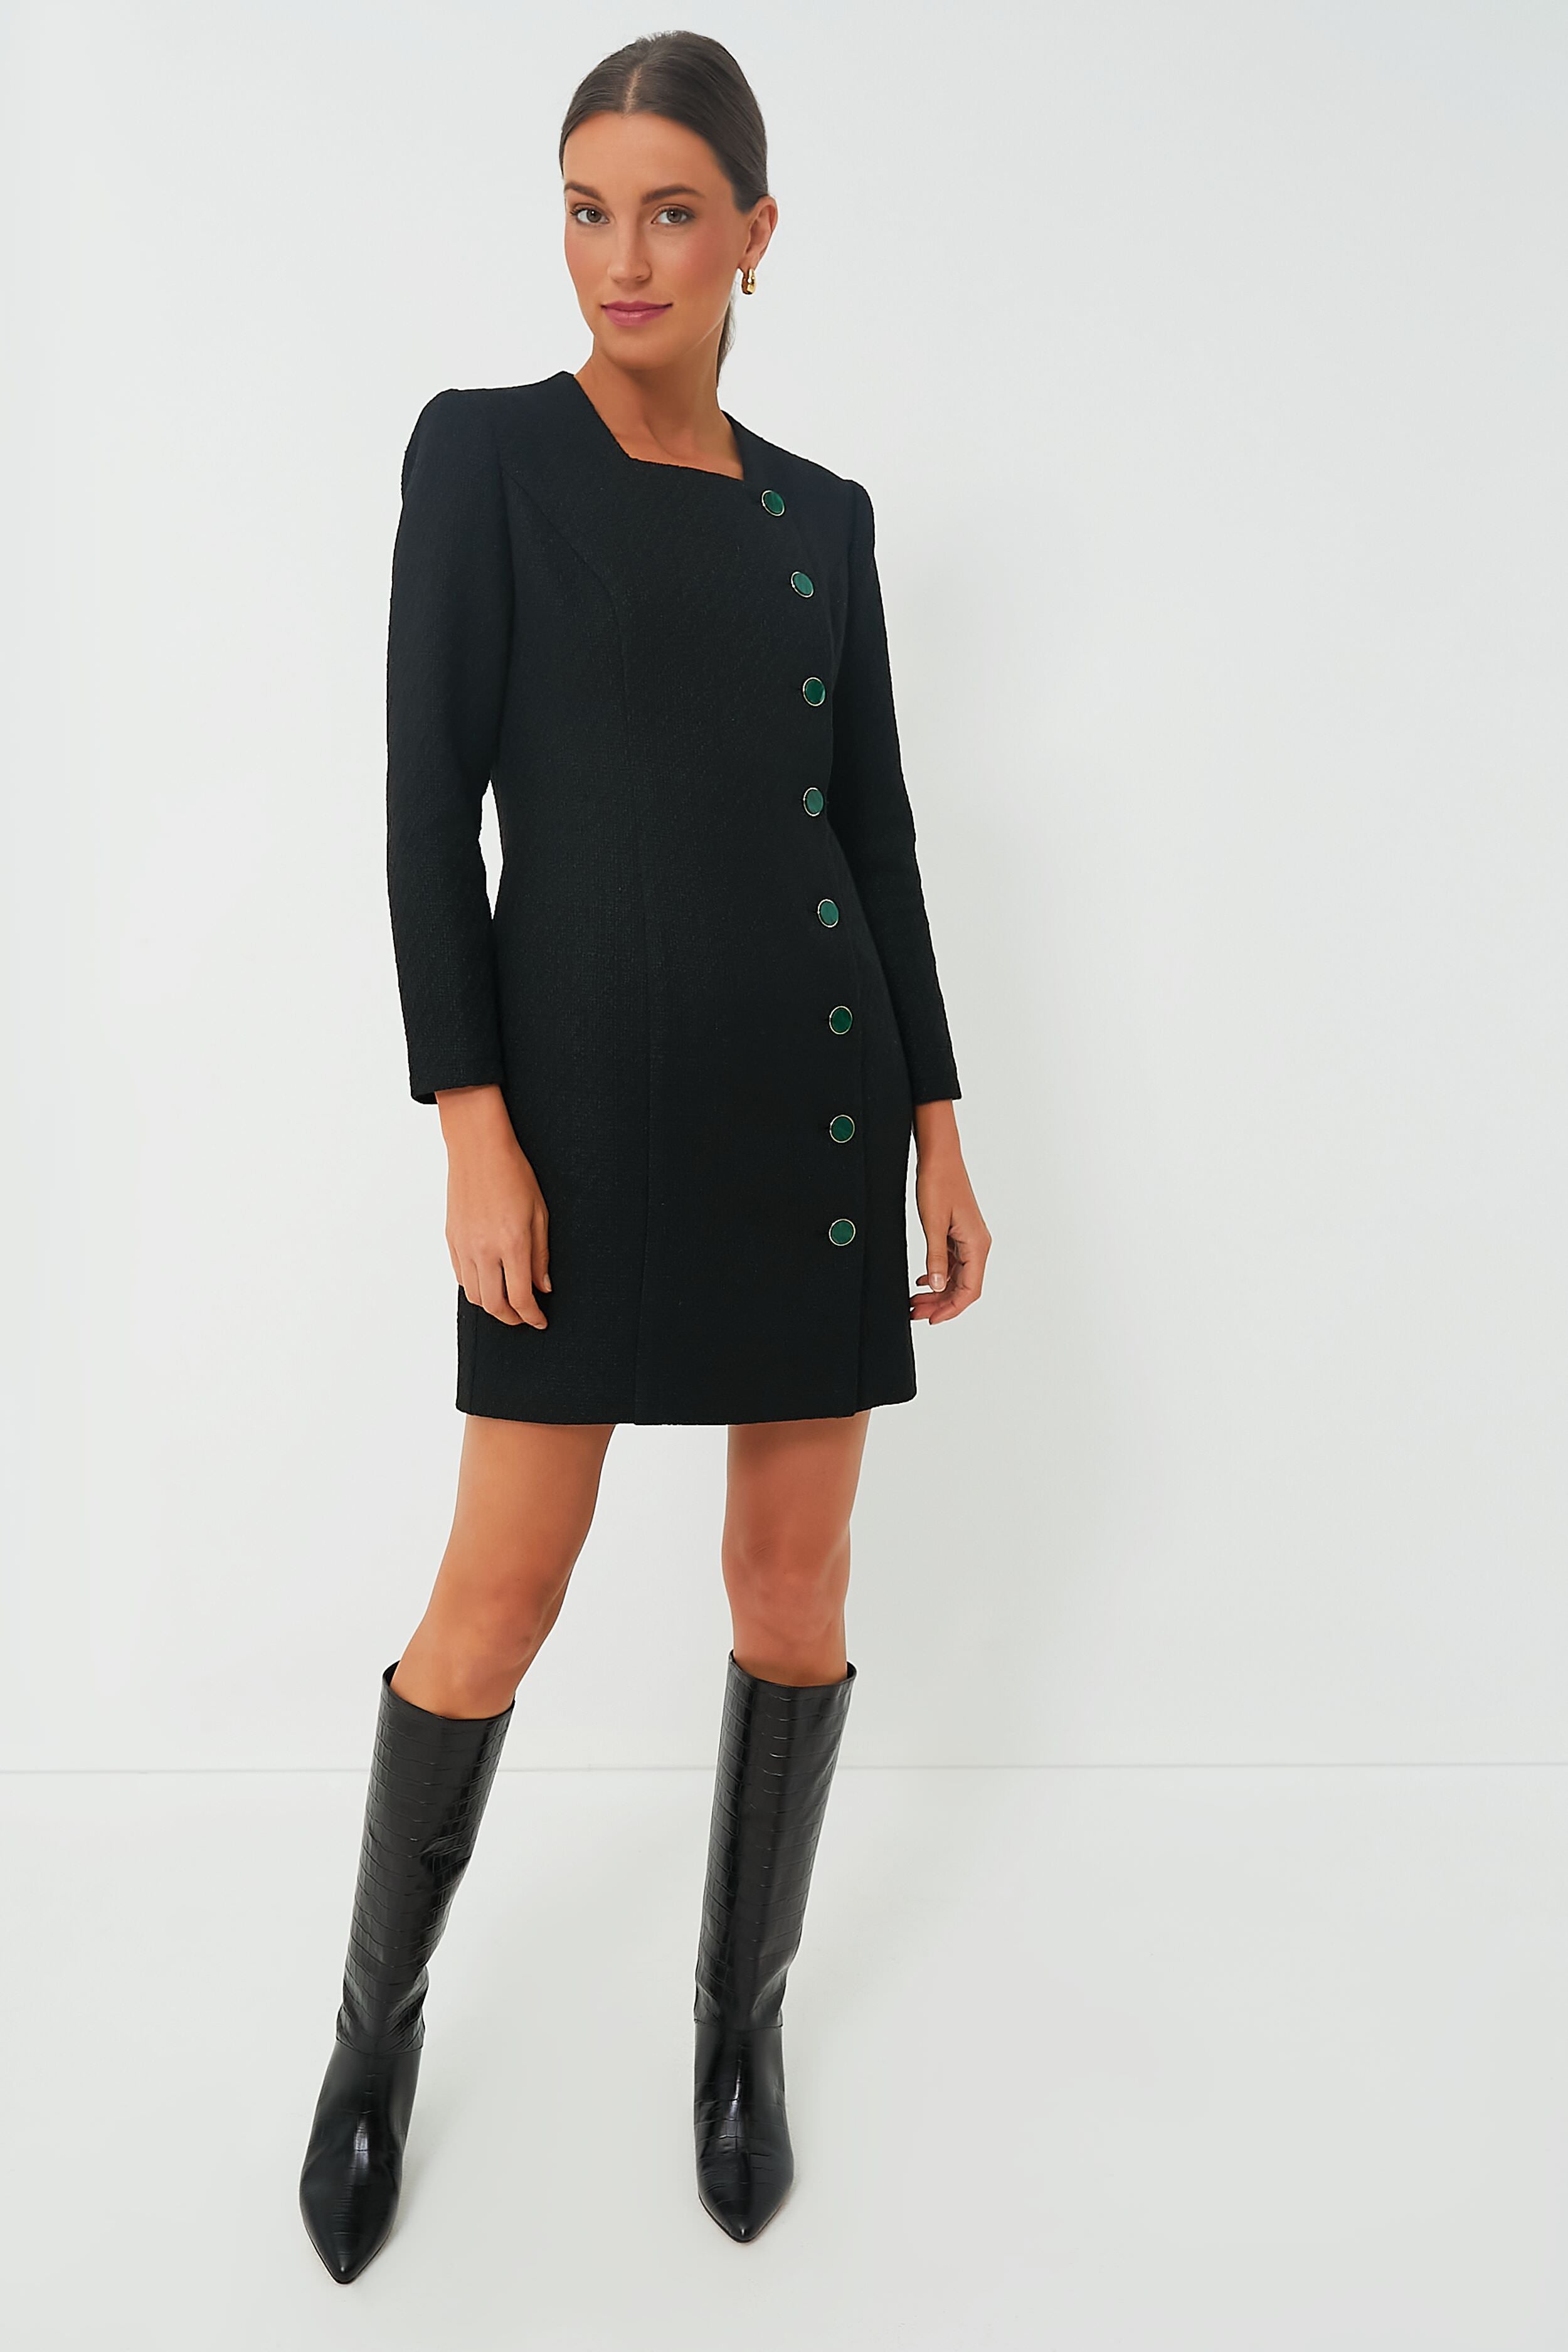 Vinyl Bust Tweed Dress - Women - Ready-to-Wear